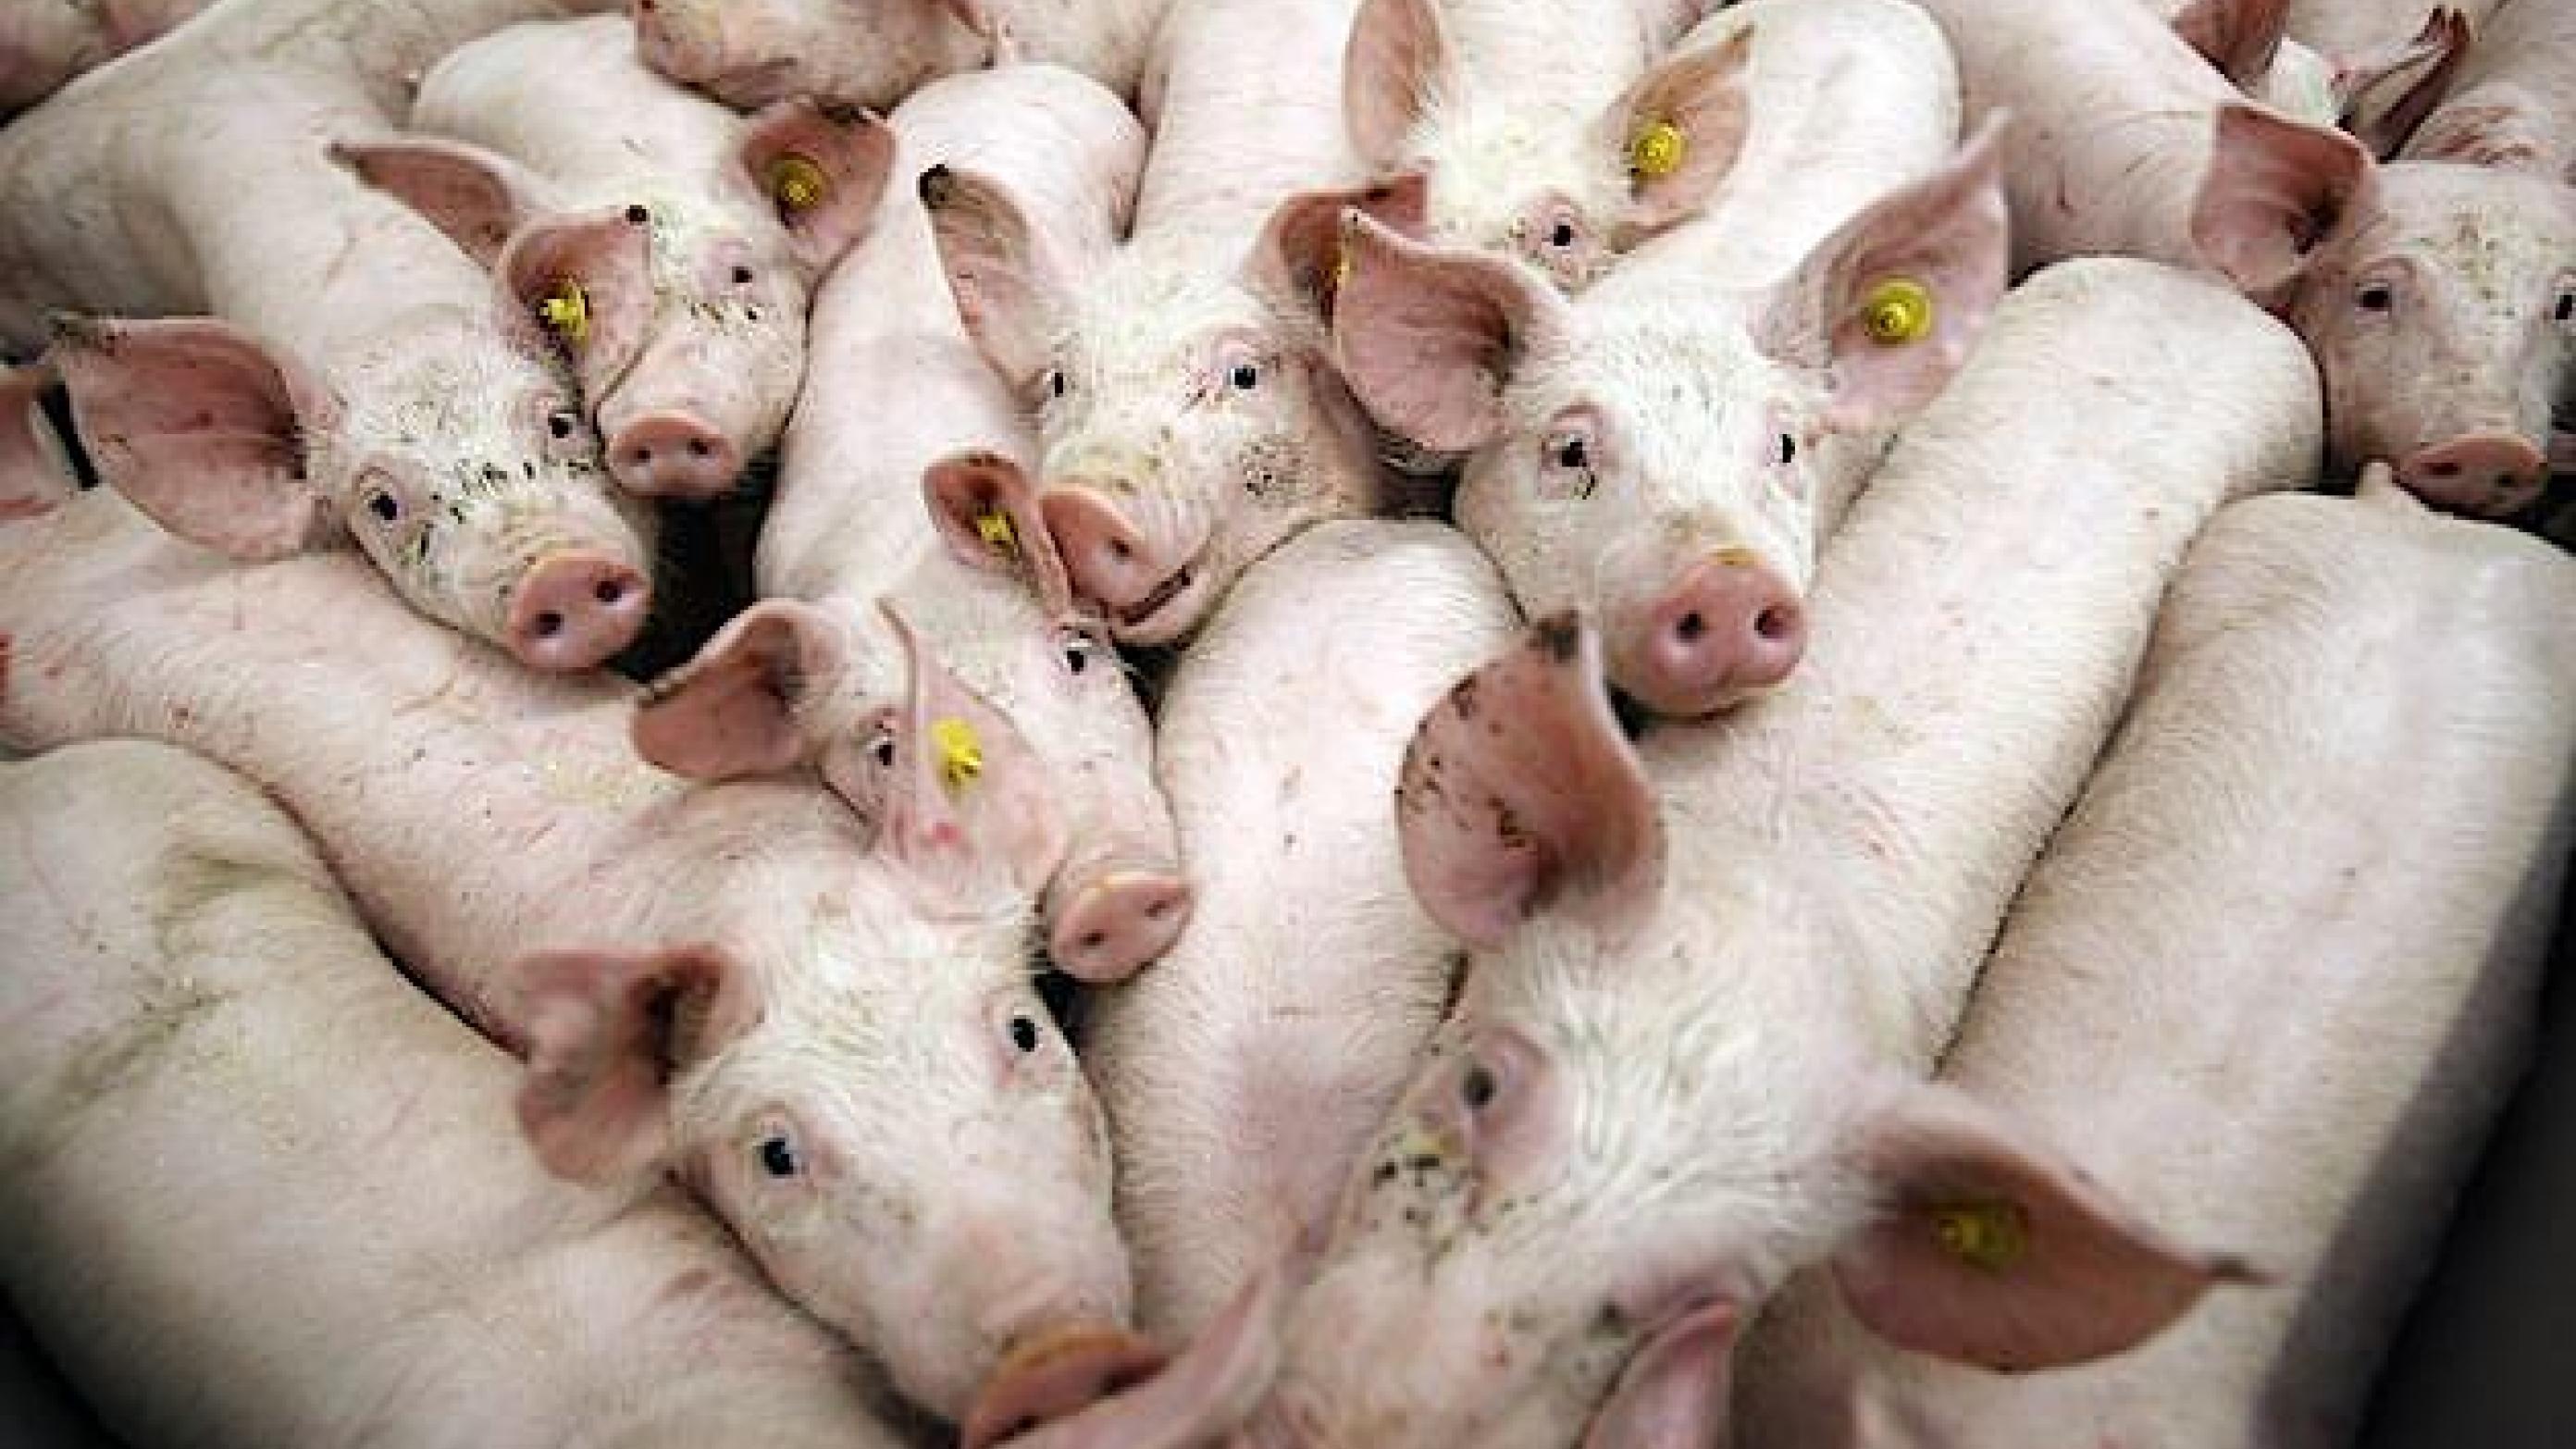 Svineproducenterne får uvant ros fra Lægeforeningen for beslutningen om at halvere brugen af det bredspektrede antibiotikum Tetracyklin inden udgangen af 2015. (Foto: Colourbox)